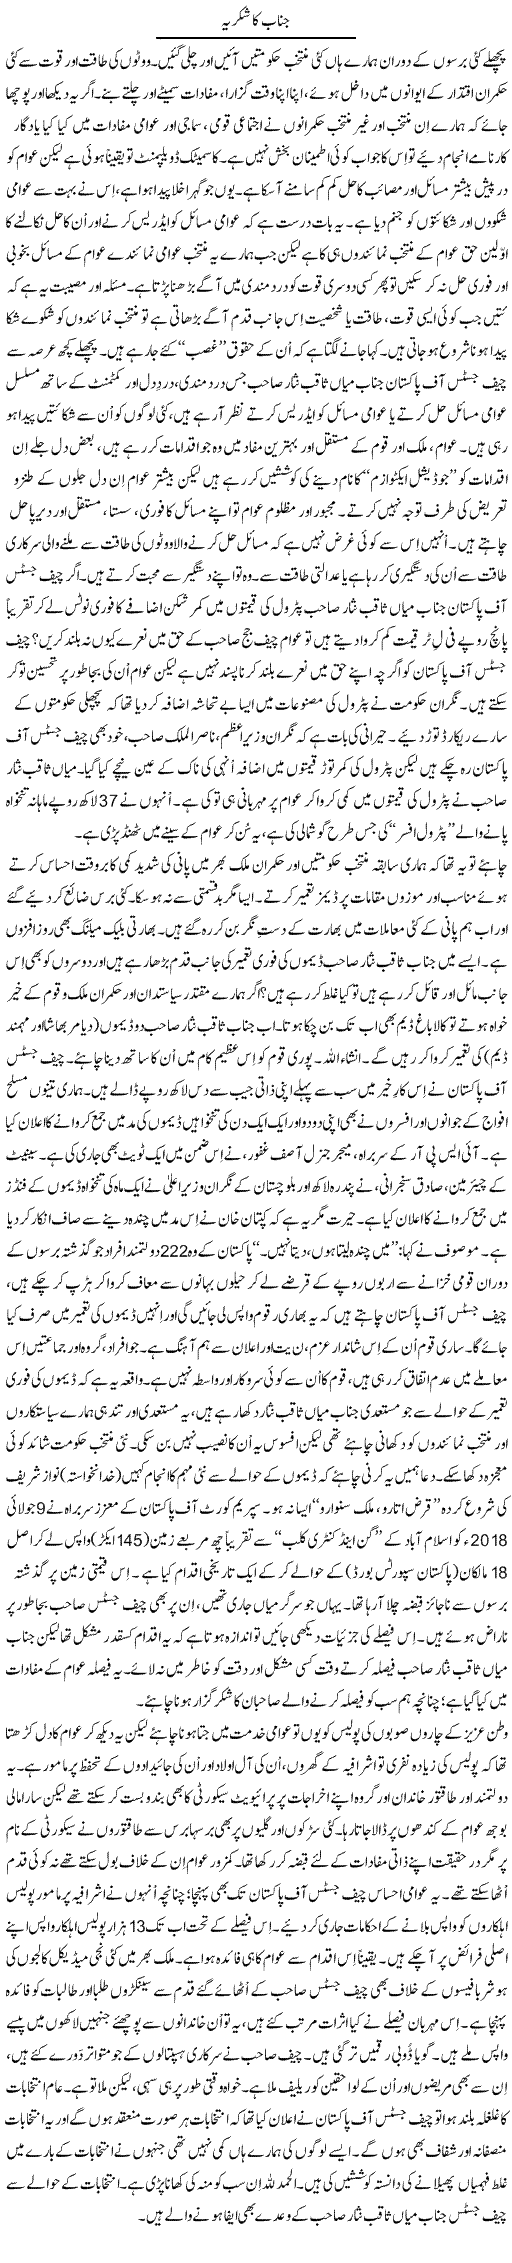 Janab Shukriya | Tanveer Qaisar Shahid | Daily Urdu Columns